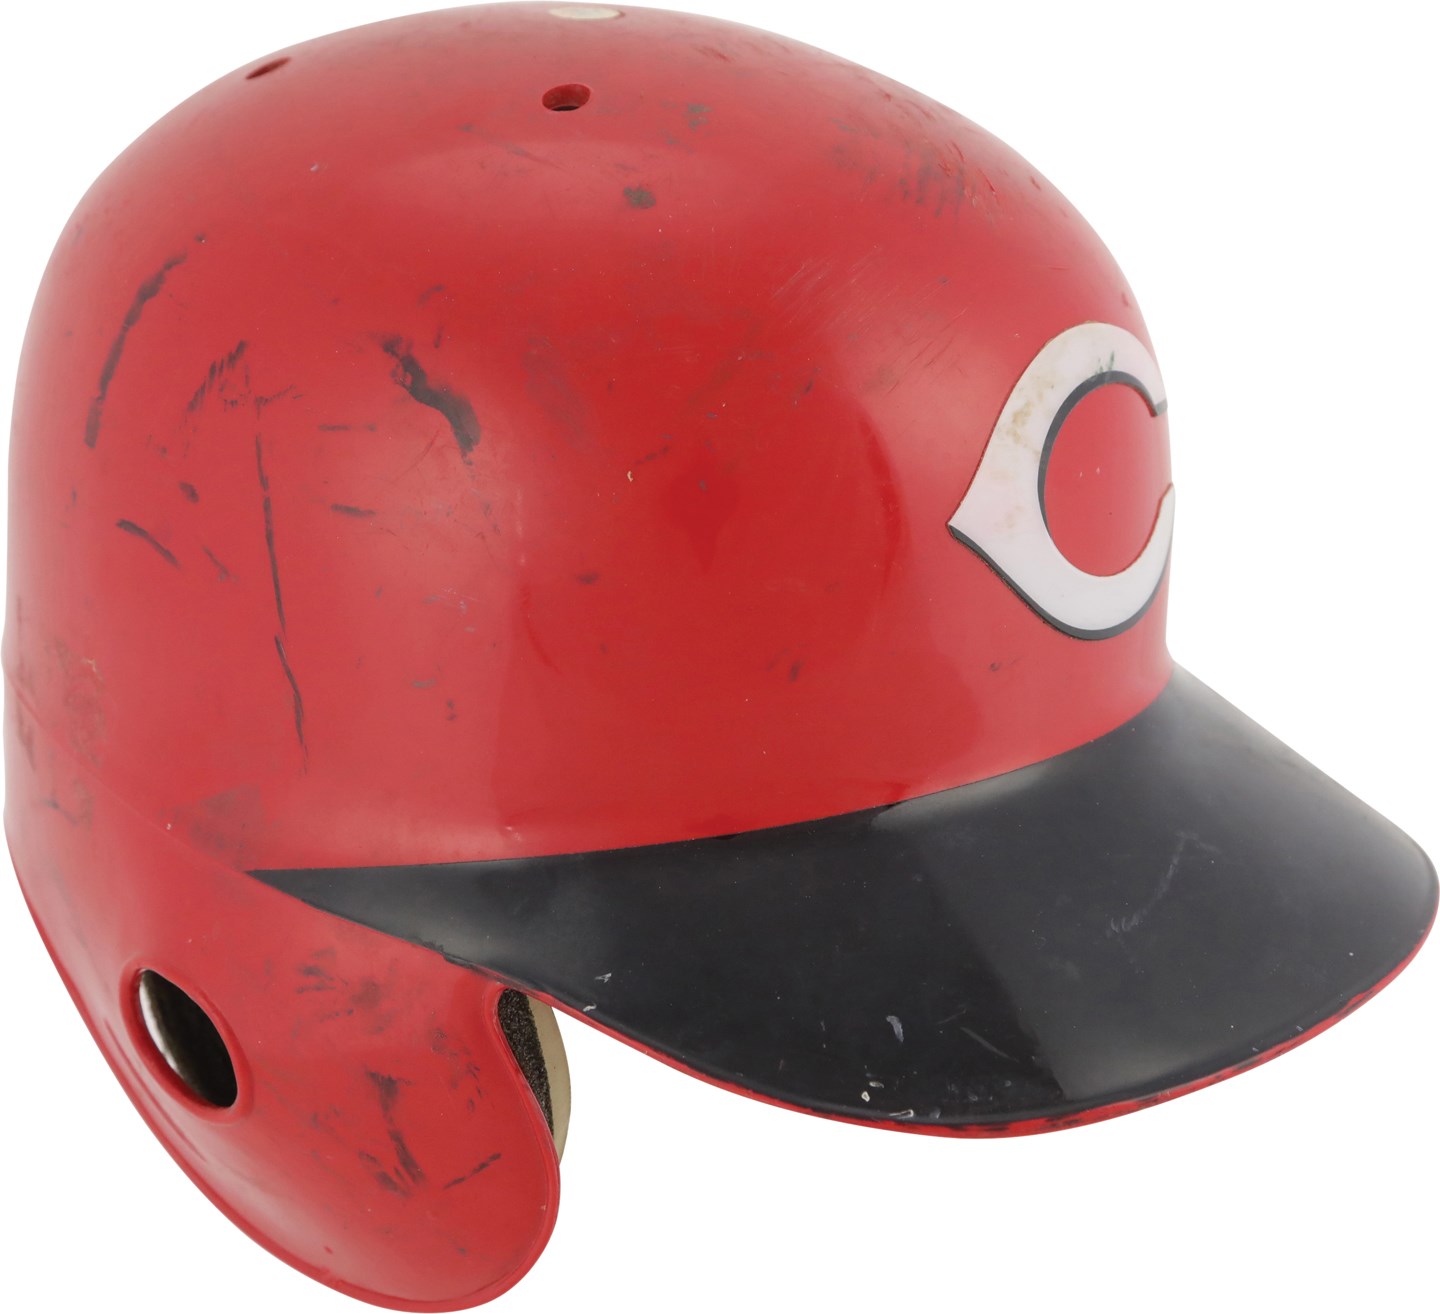 - Circa 2000 Ken Griffey Jr. Cincinnati Reds Game Used Helmet